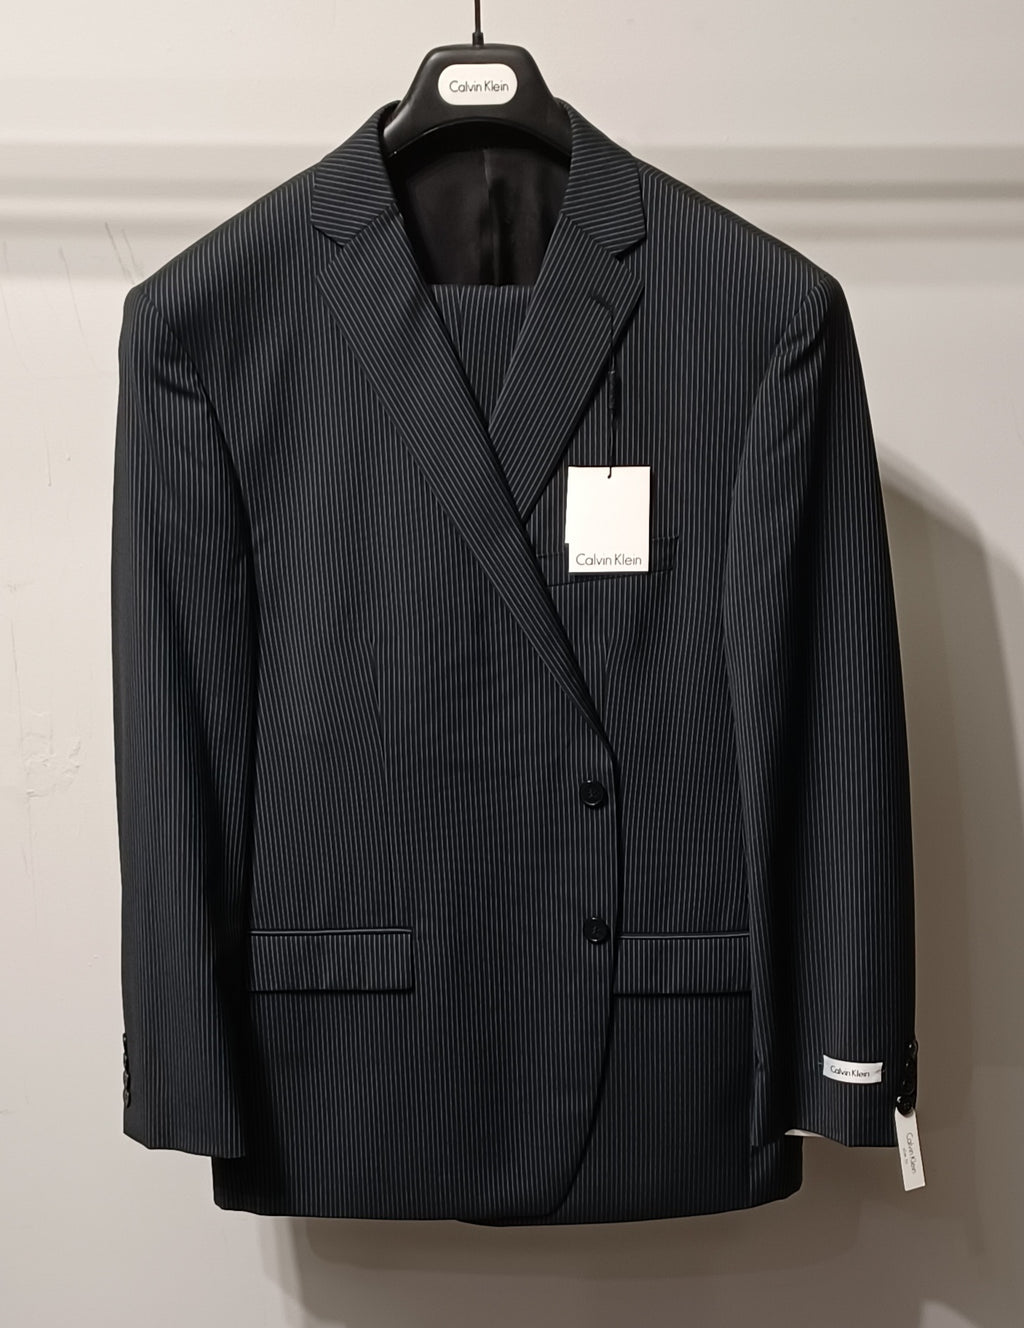 Calvin Klein 2pc Modern/Slim Fit Suit #145 ONLY SIZE 48R, 50R, 40L, 42L, 44L, 46L, 48L, 52L (FINAL SALE)